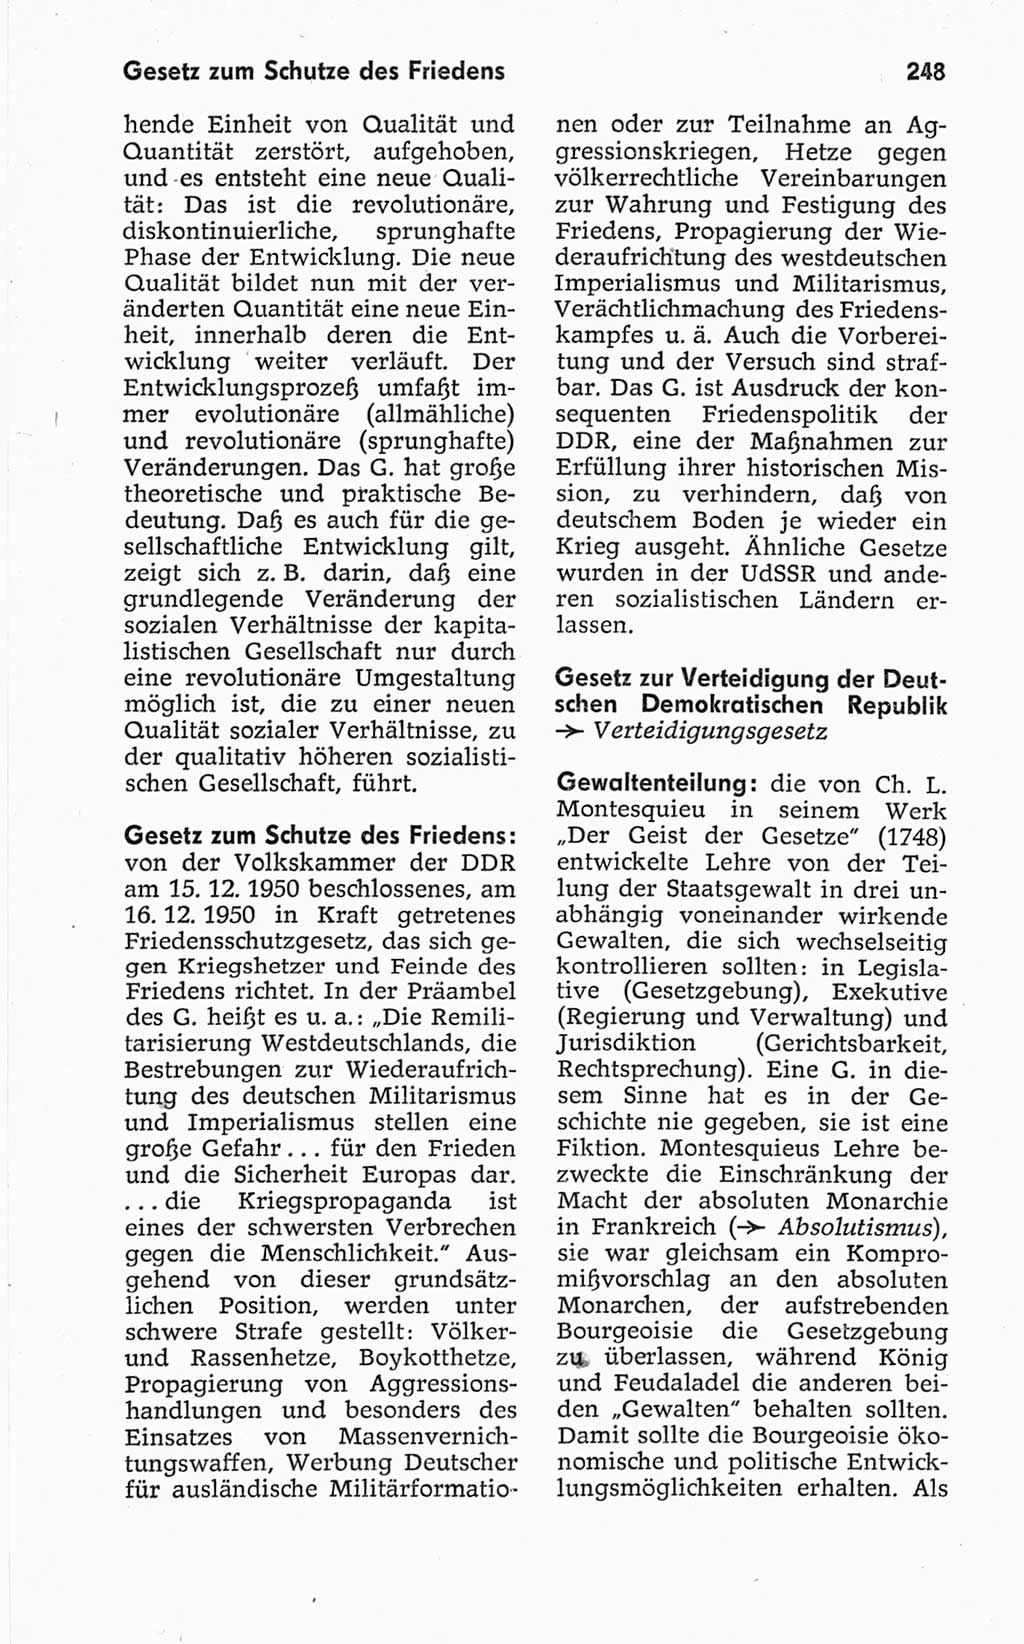 Kleines politisches Wörterbuch [Deutsche Demokratische Republik (DDR)] 1967, Seite 248 (Kl. pol. Wb. DDR 1967, S. 248)